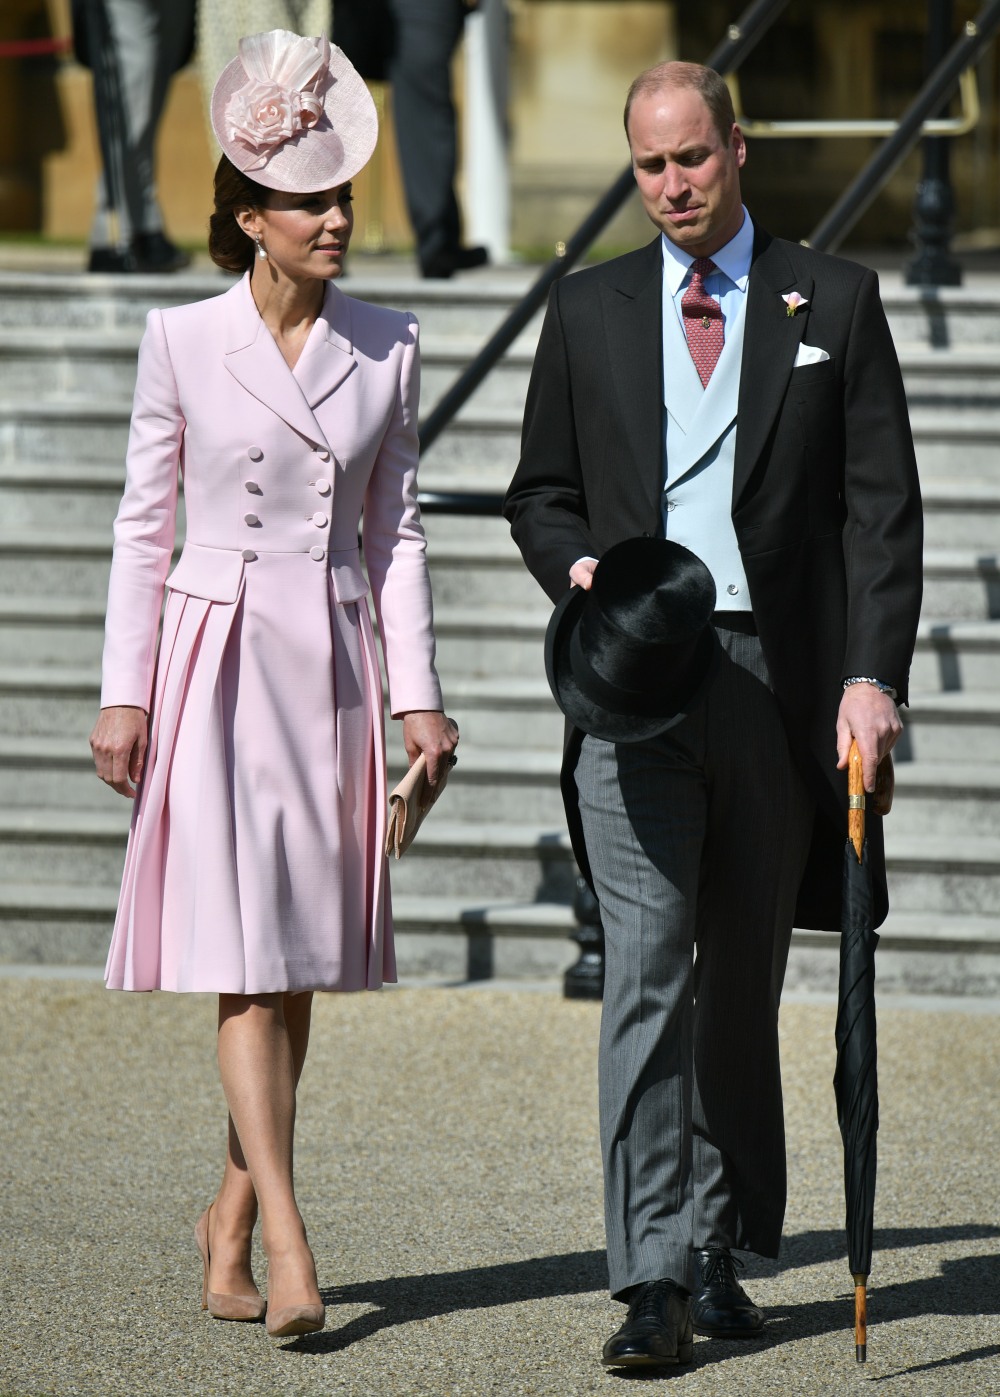 Герцогиня Кейт в розовом Маккуин на вечеринке в дворцовом саду: красиво или странно?